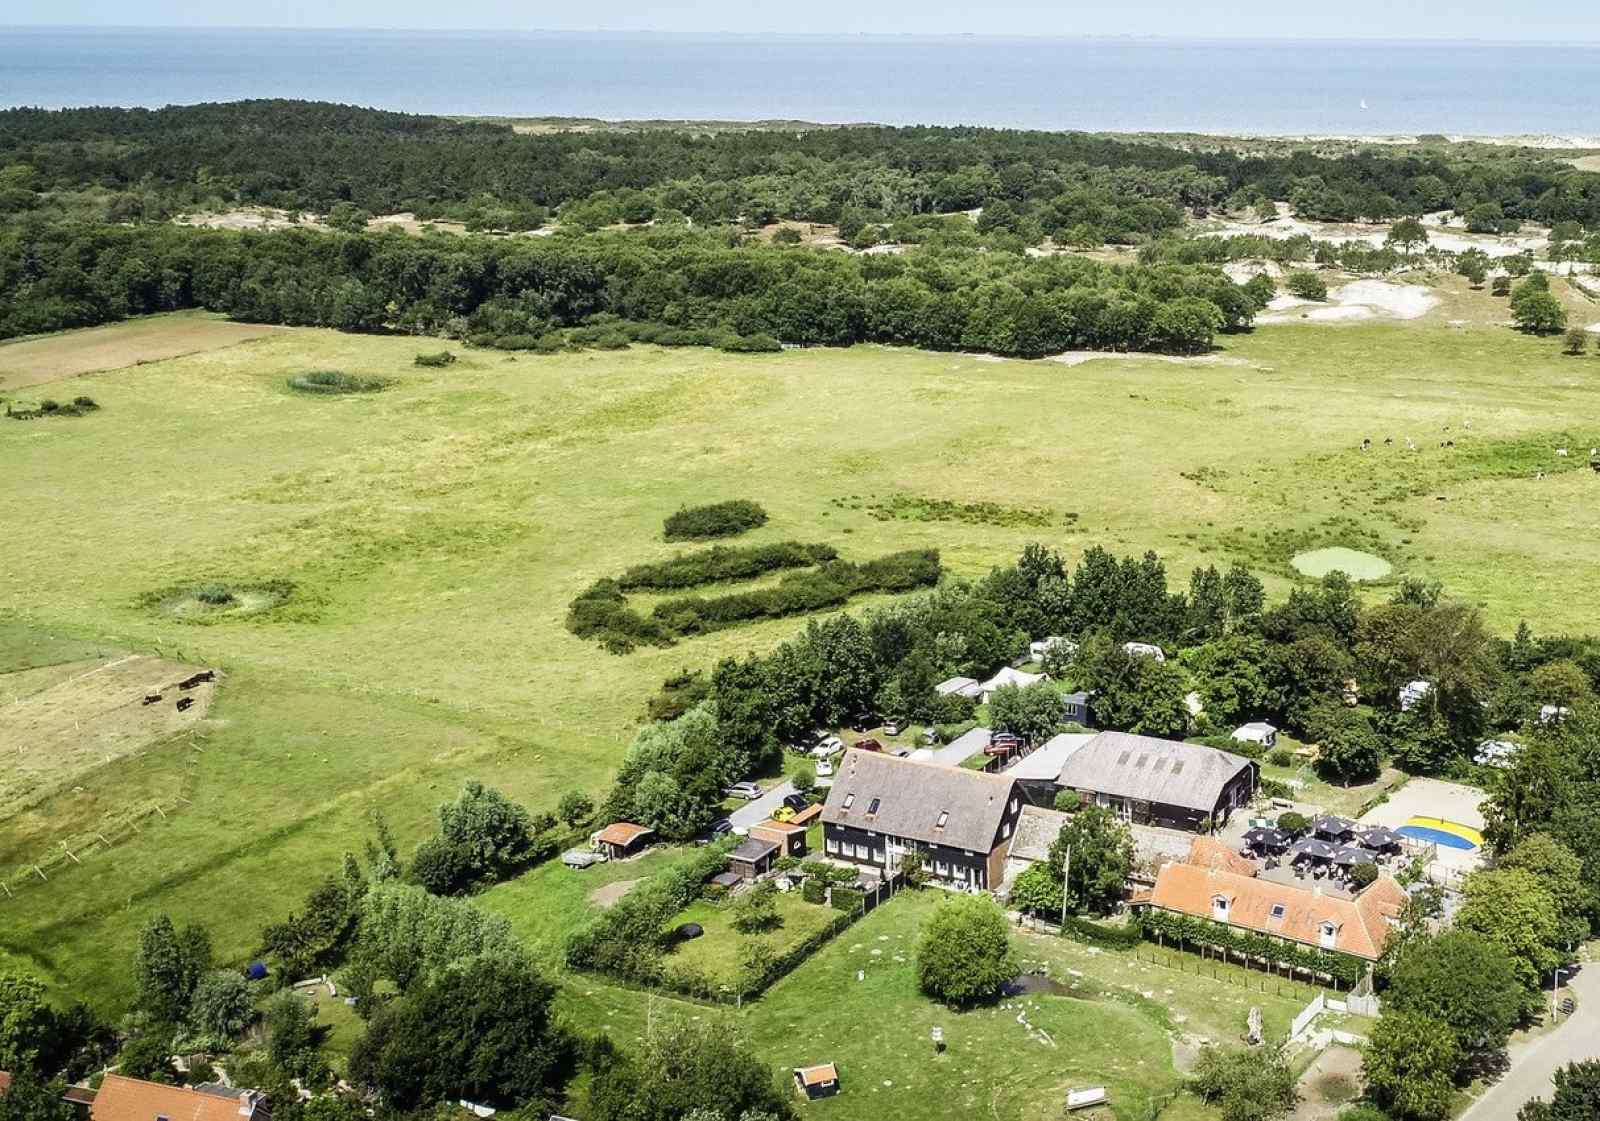 Luxe 6 persoons vakantiehuis in Vrouwenpolder - 900m van het strand - Nederland - Europa - Vrouwenpolder